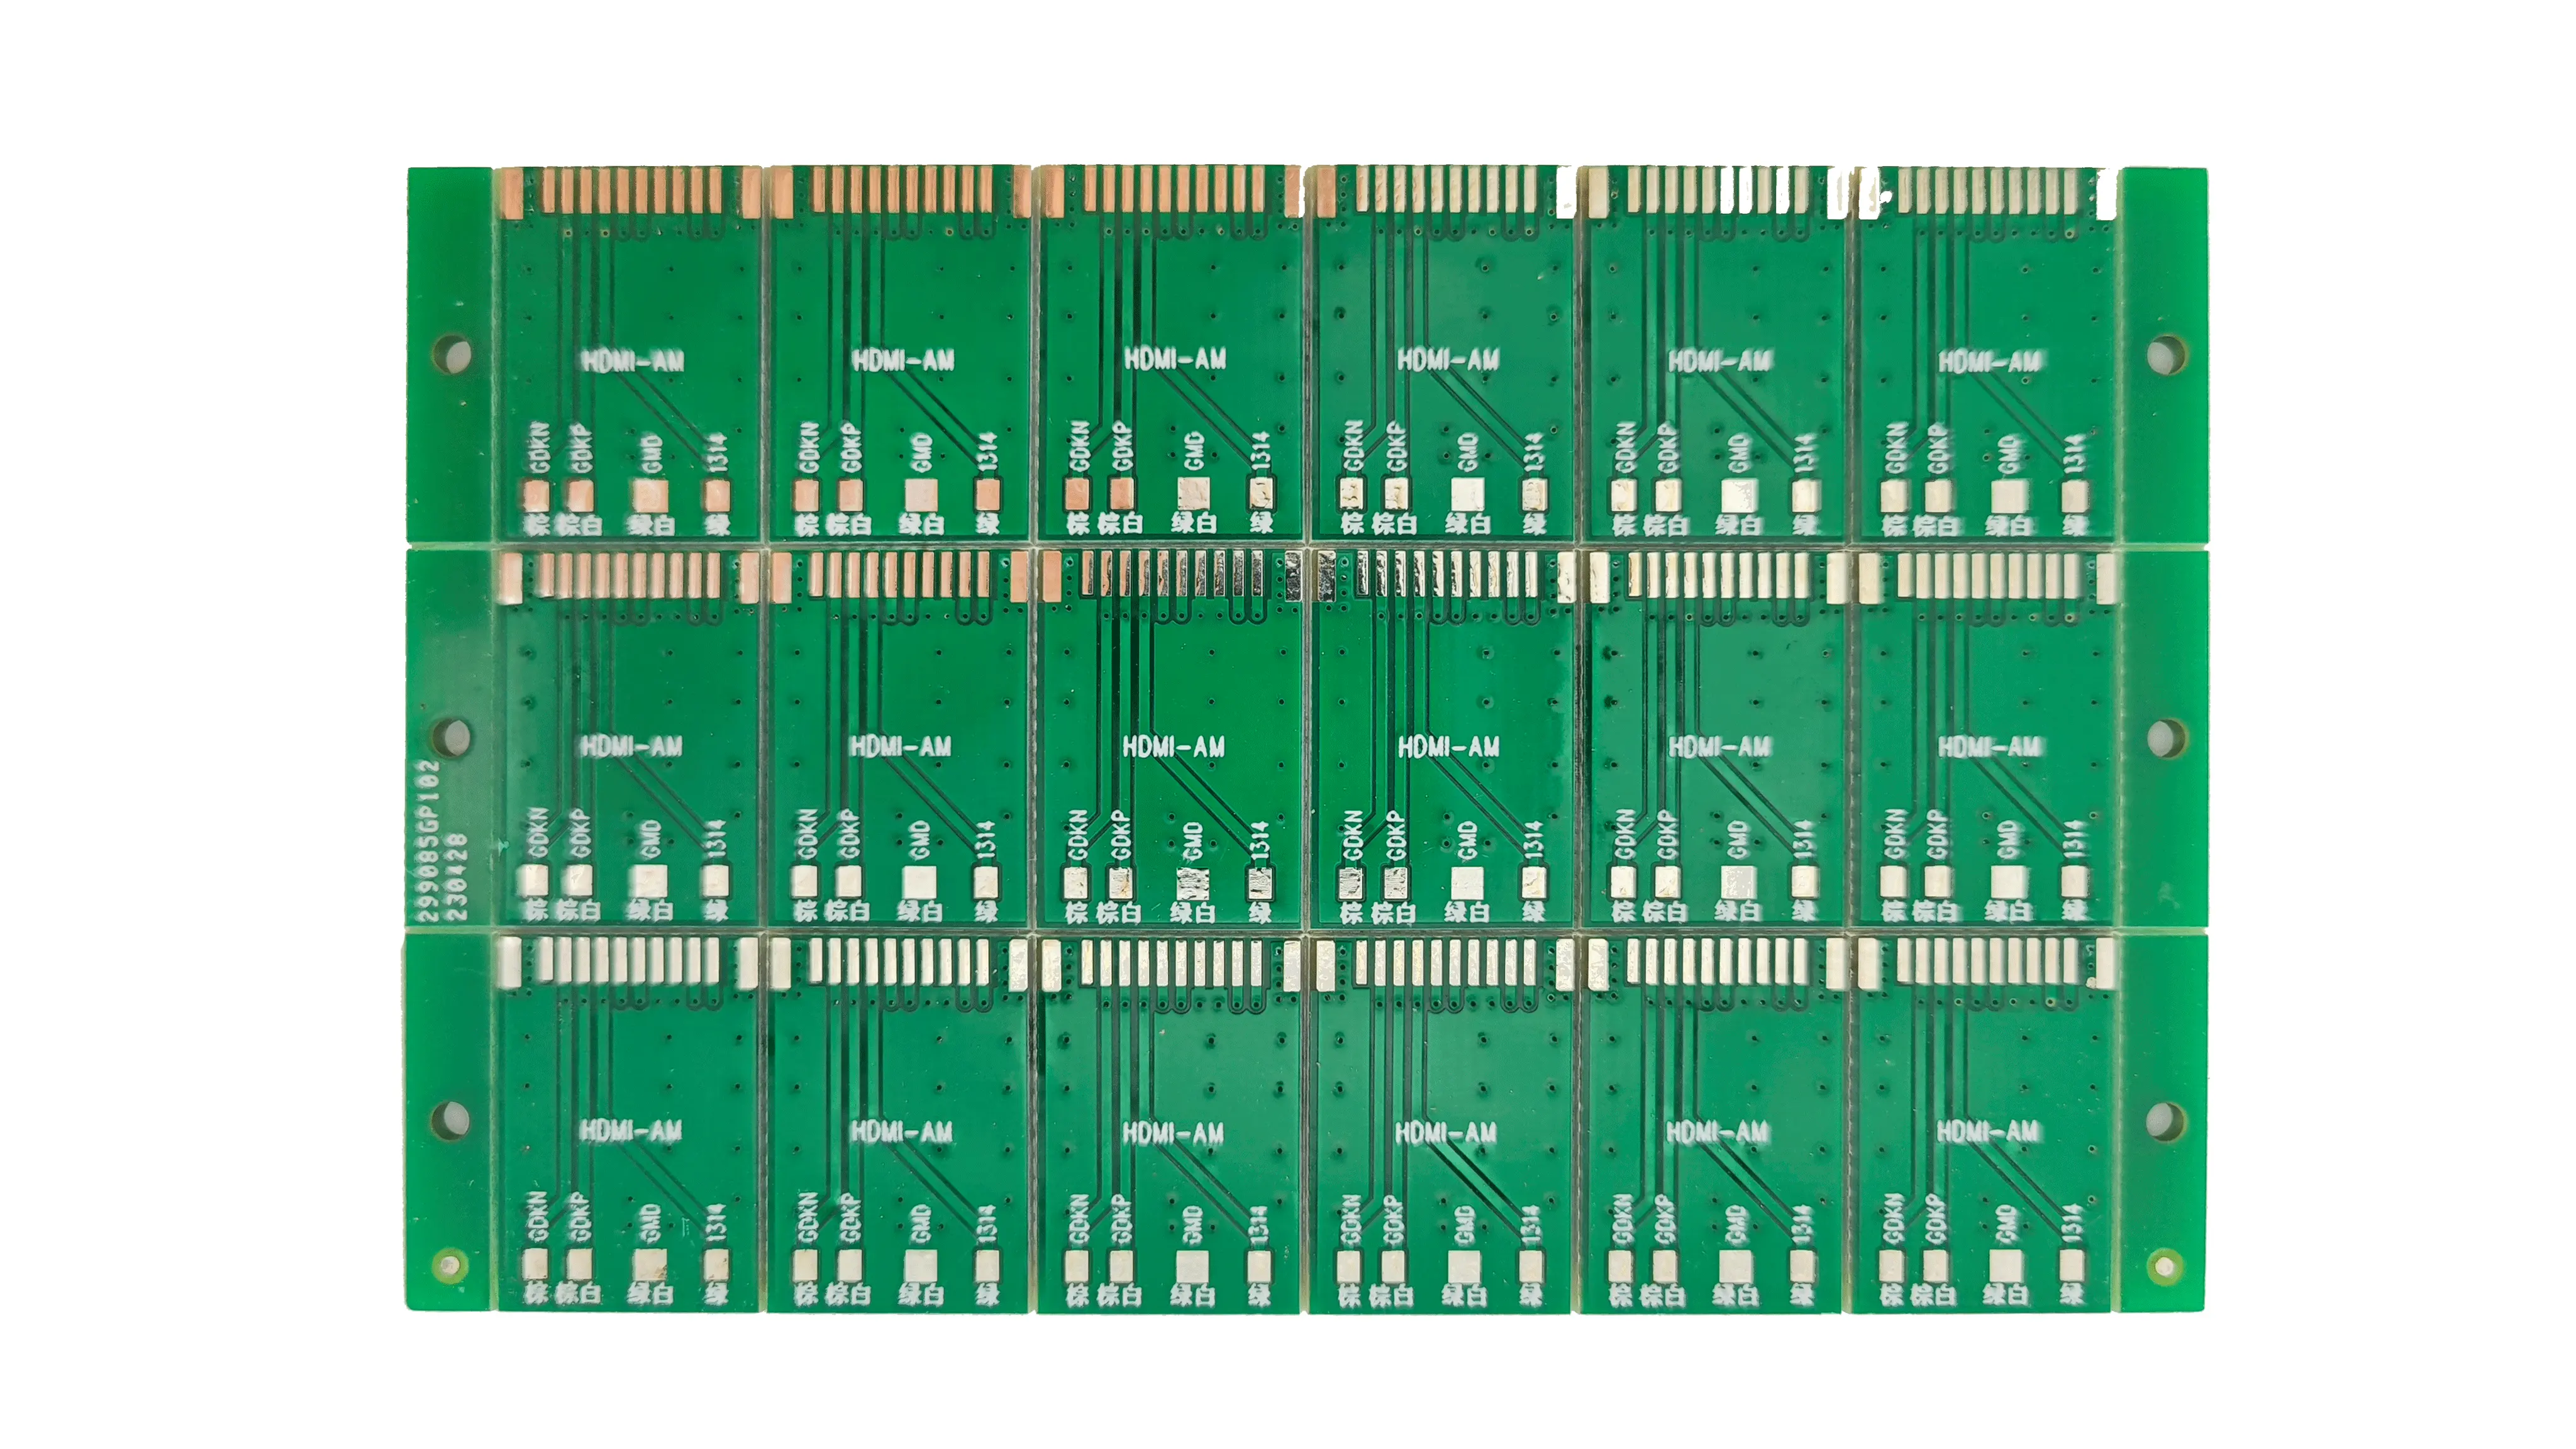 Électronique intelligente personnalisée du fabricant OEM Assemblage de cartes de circuits imprimés personnalisés Applications de clavier électronique PCBA intelligent